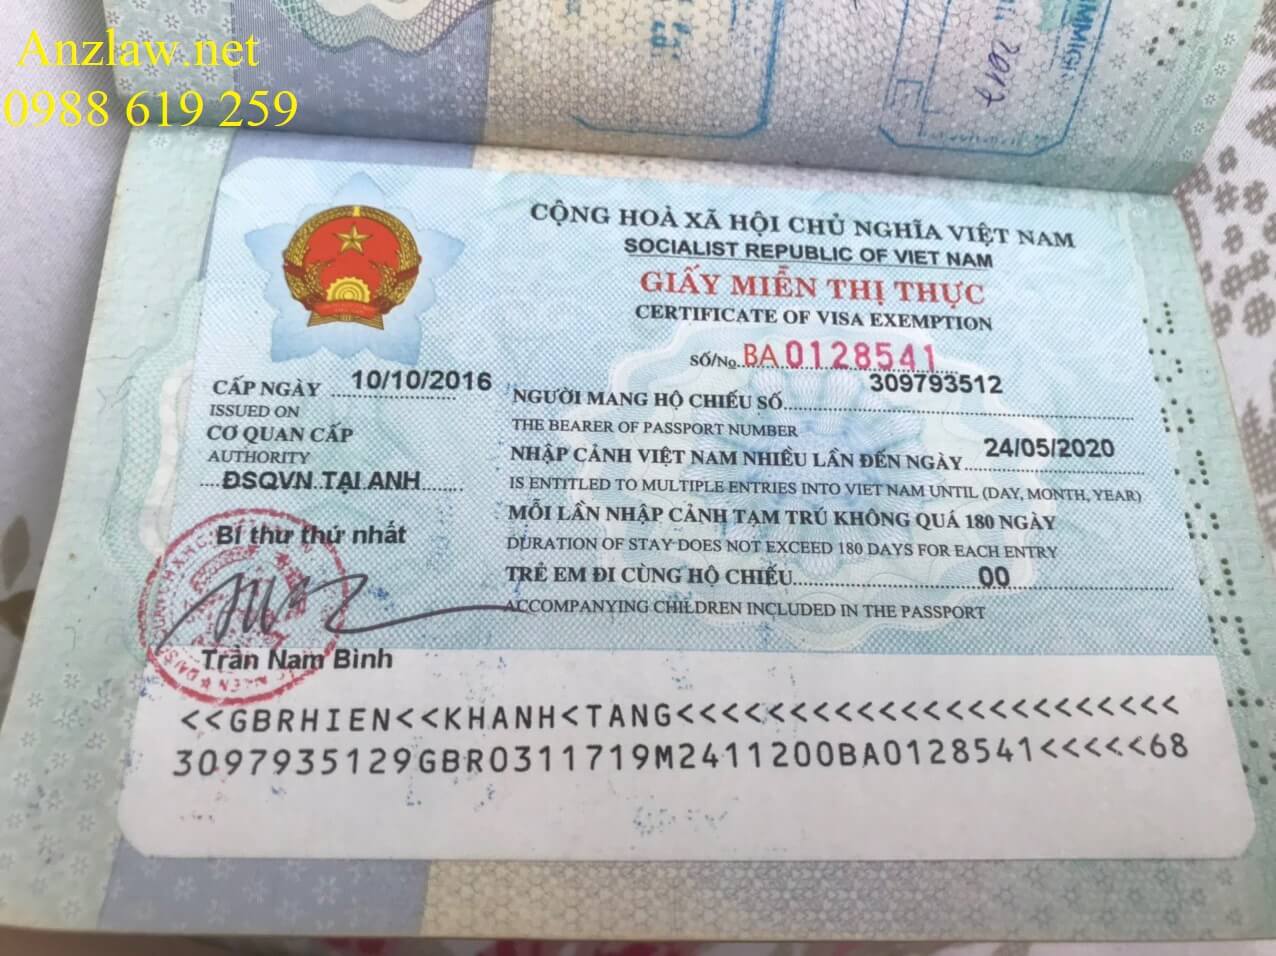 Hồ sơ đề nghị cấp giấy miễn thị thực